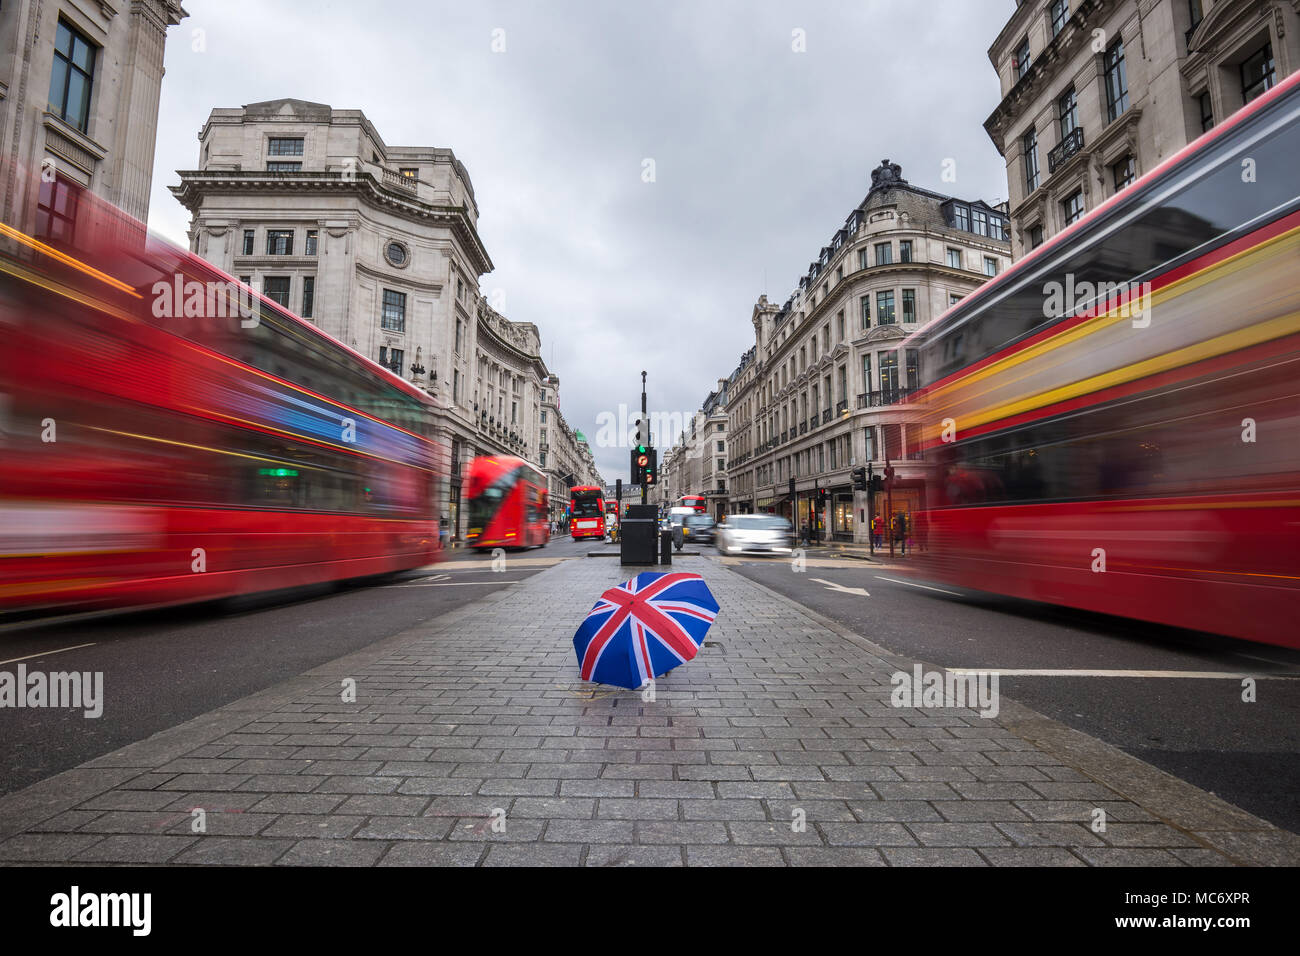 Londres, Angleterre - parapluie britannique occupé à Regent Street avec rouge emblématique des autobus à deux étages en mouvement Banque D'Images